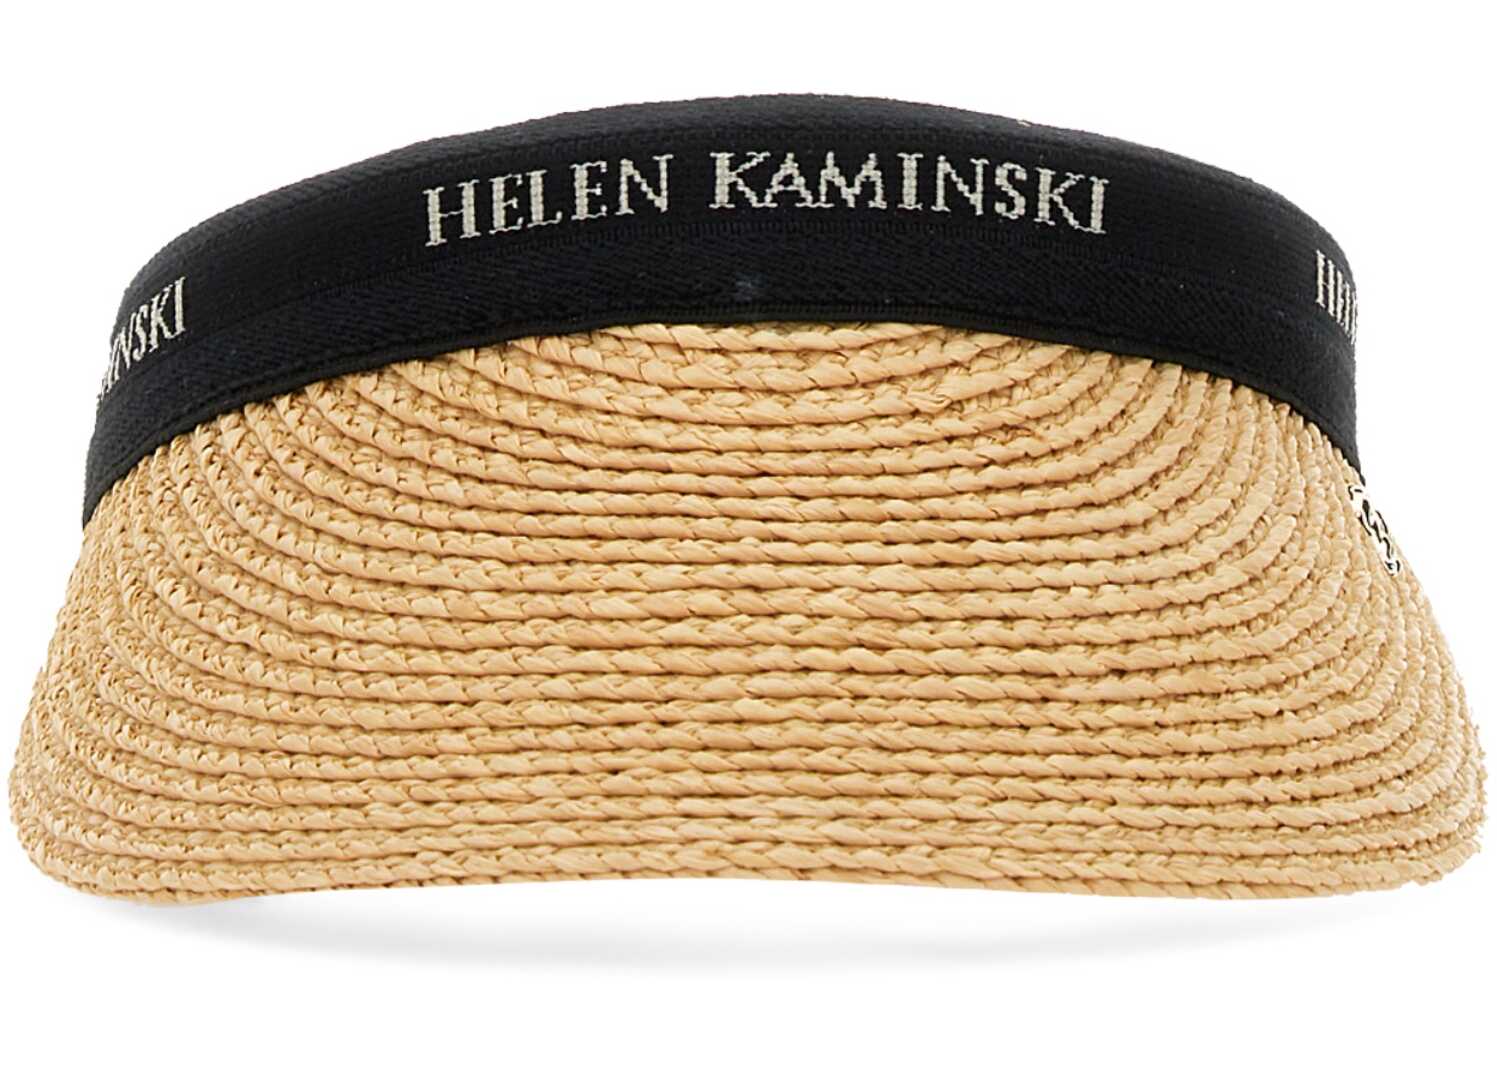 HELEN KAMINSKI Navy Hat BLACK